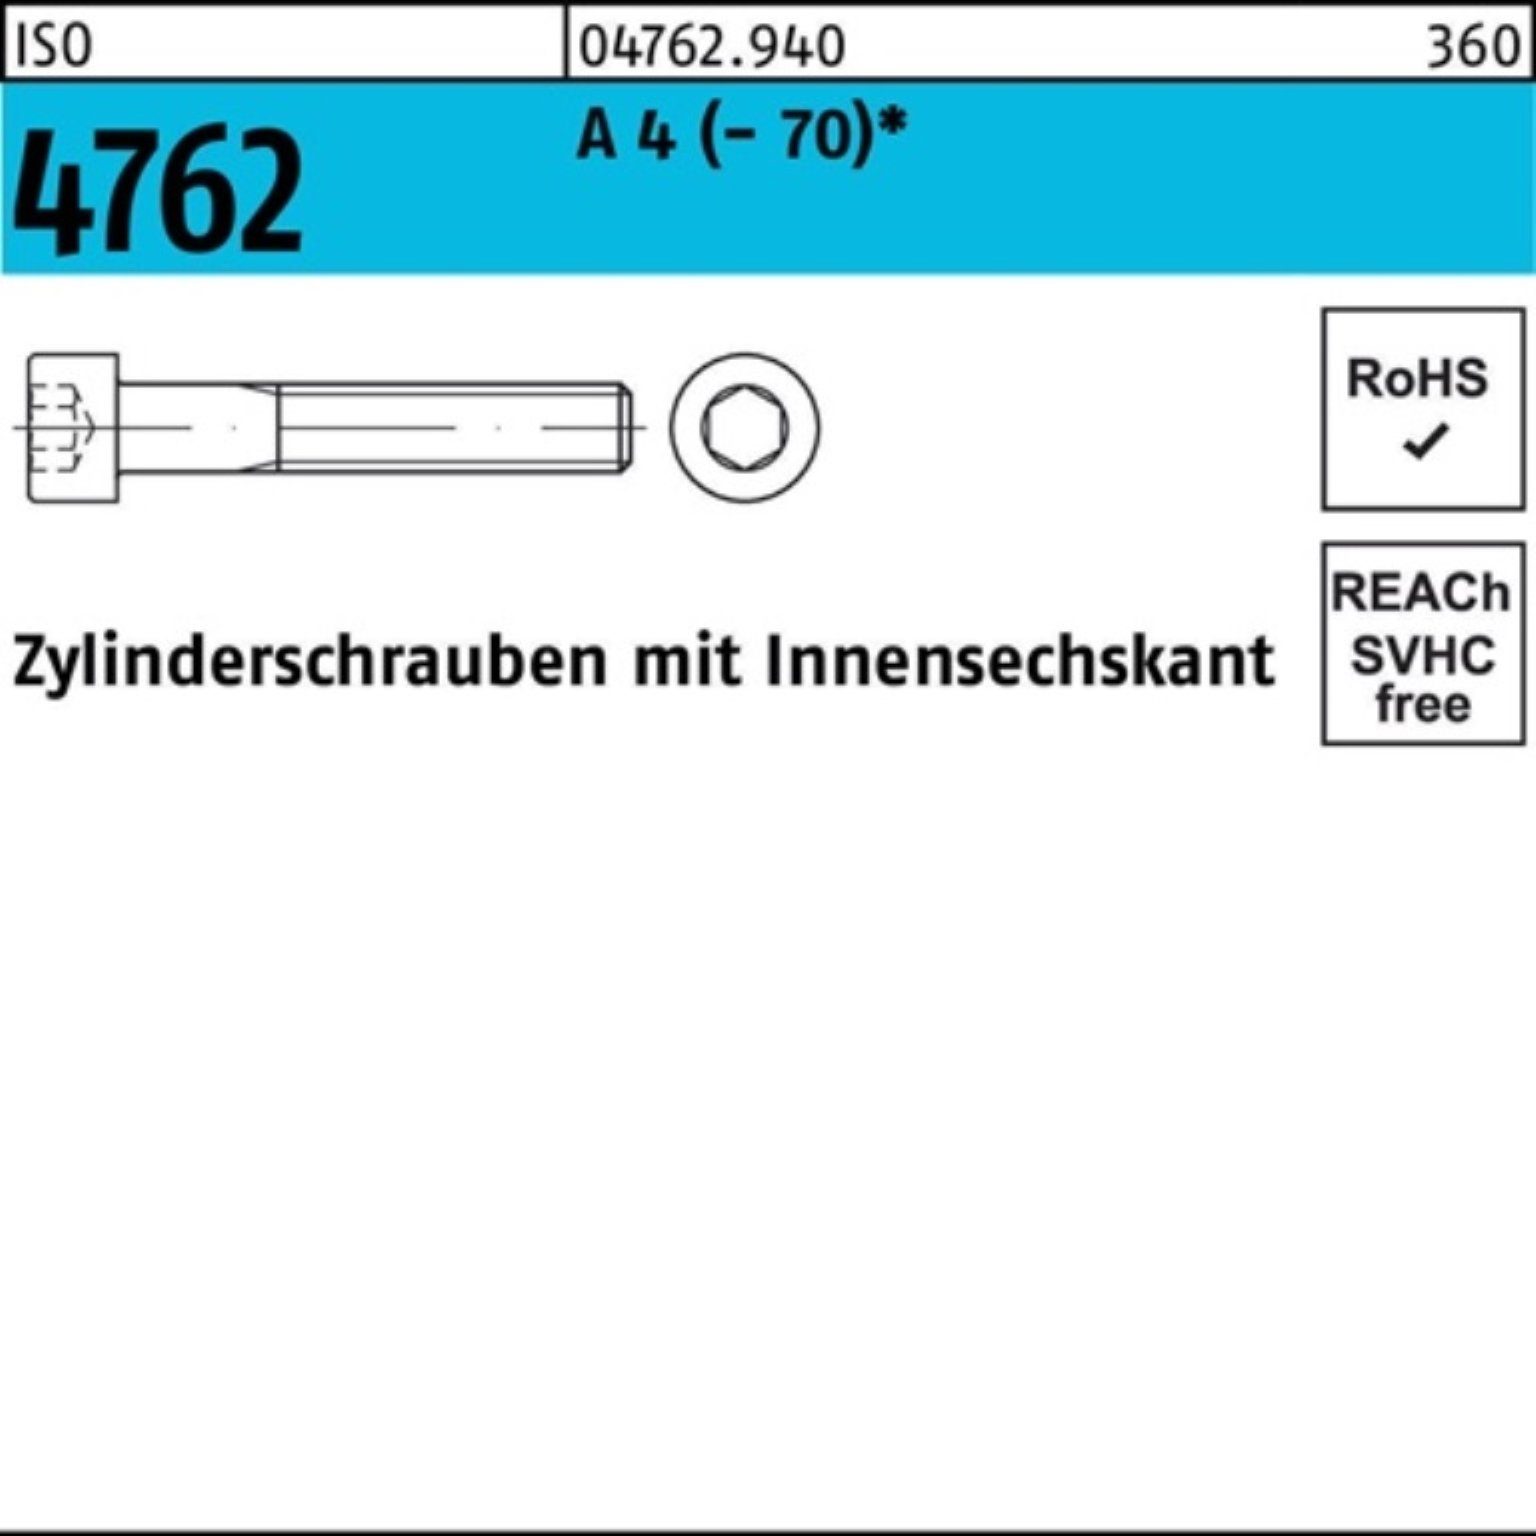 I A Innen-6kt 4 Zylinderschraube Zylinderschraube 100er Pack 200 4762 1 ISO Stück Reyher M24x